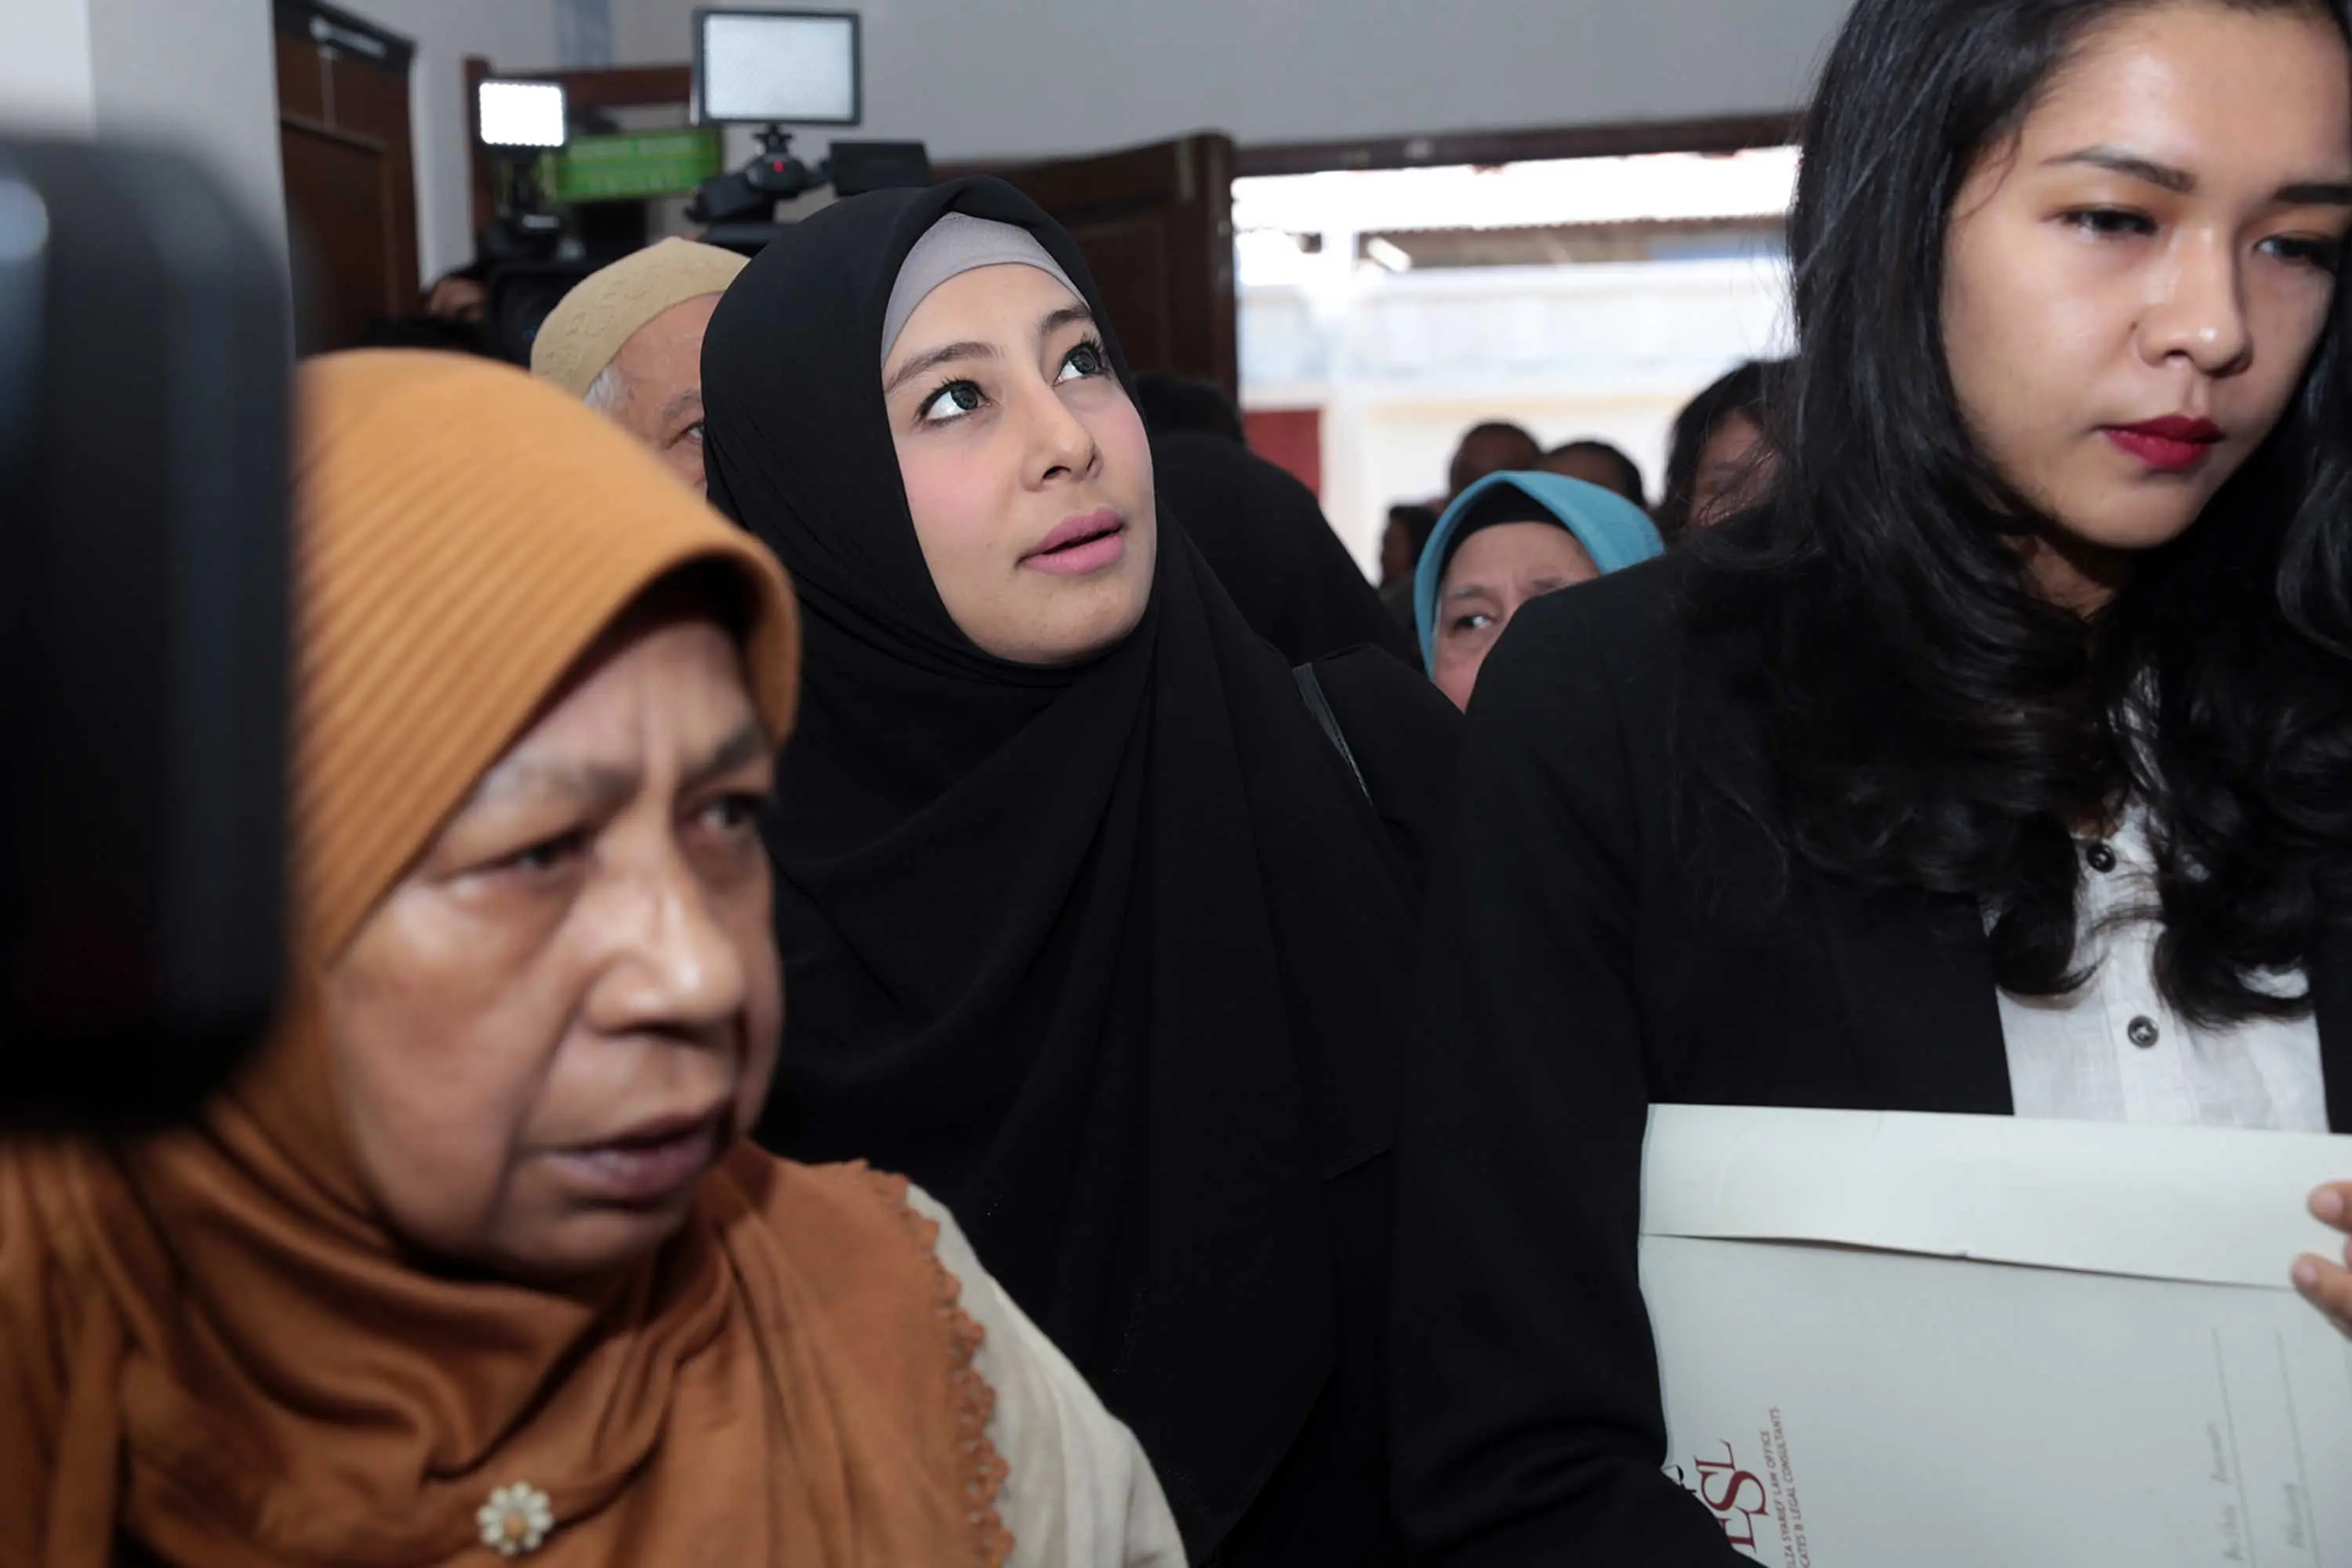 Seperti diketahui, Putri Aisyah Aminah istri Ustaz Ahmad Alhabsyi menggugat cerai suaminya yang telah memberikan tiga orang anak. Gugatan diajukan pada 31 Januari 2017 di PA Jakarta Timur. (Deki Prayoga/Bintang.com)